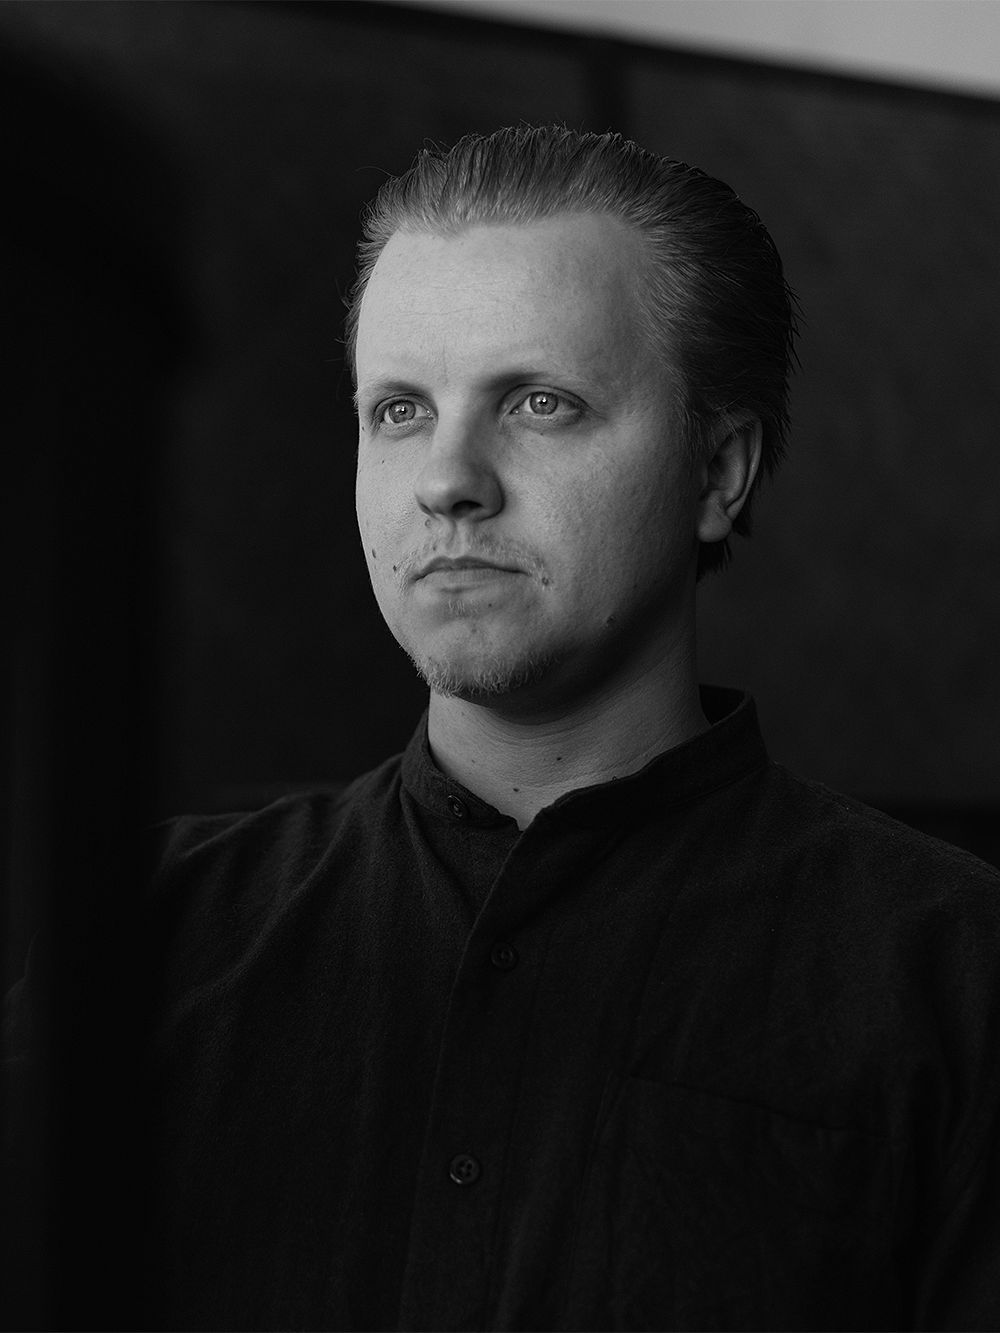 Antrei Hartikainen in black and white photo